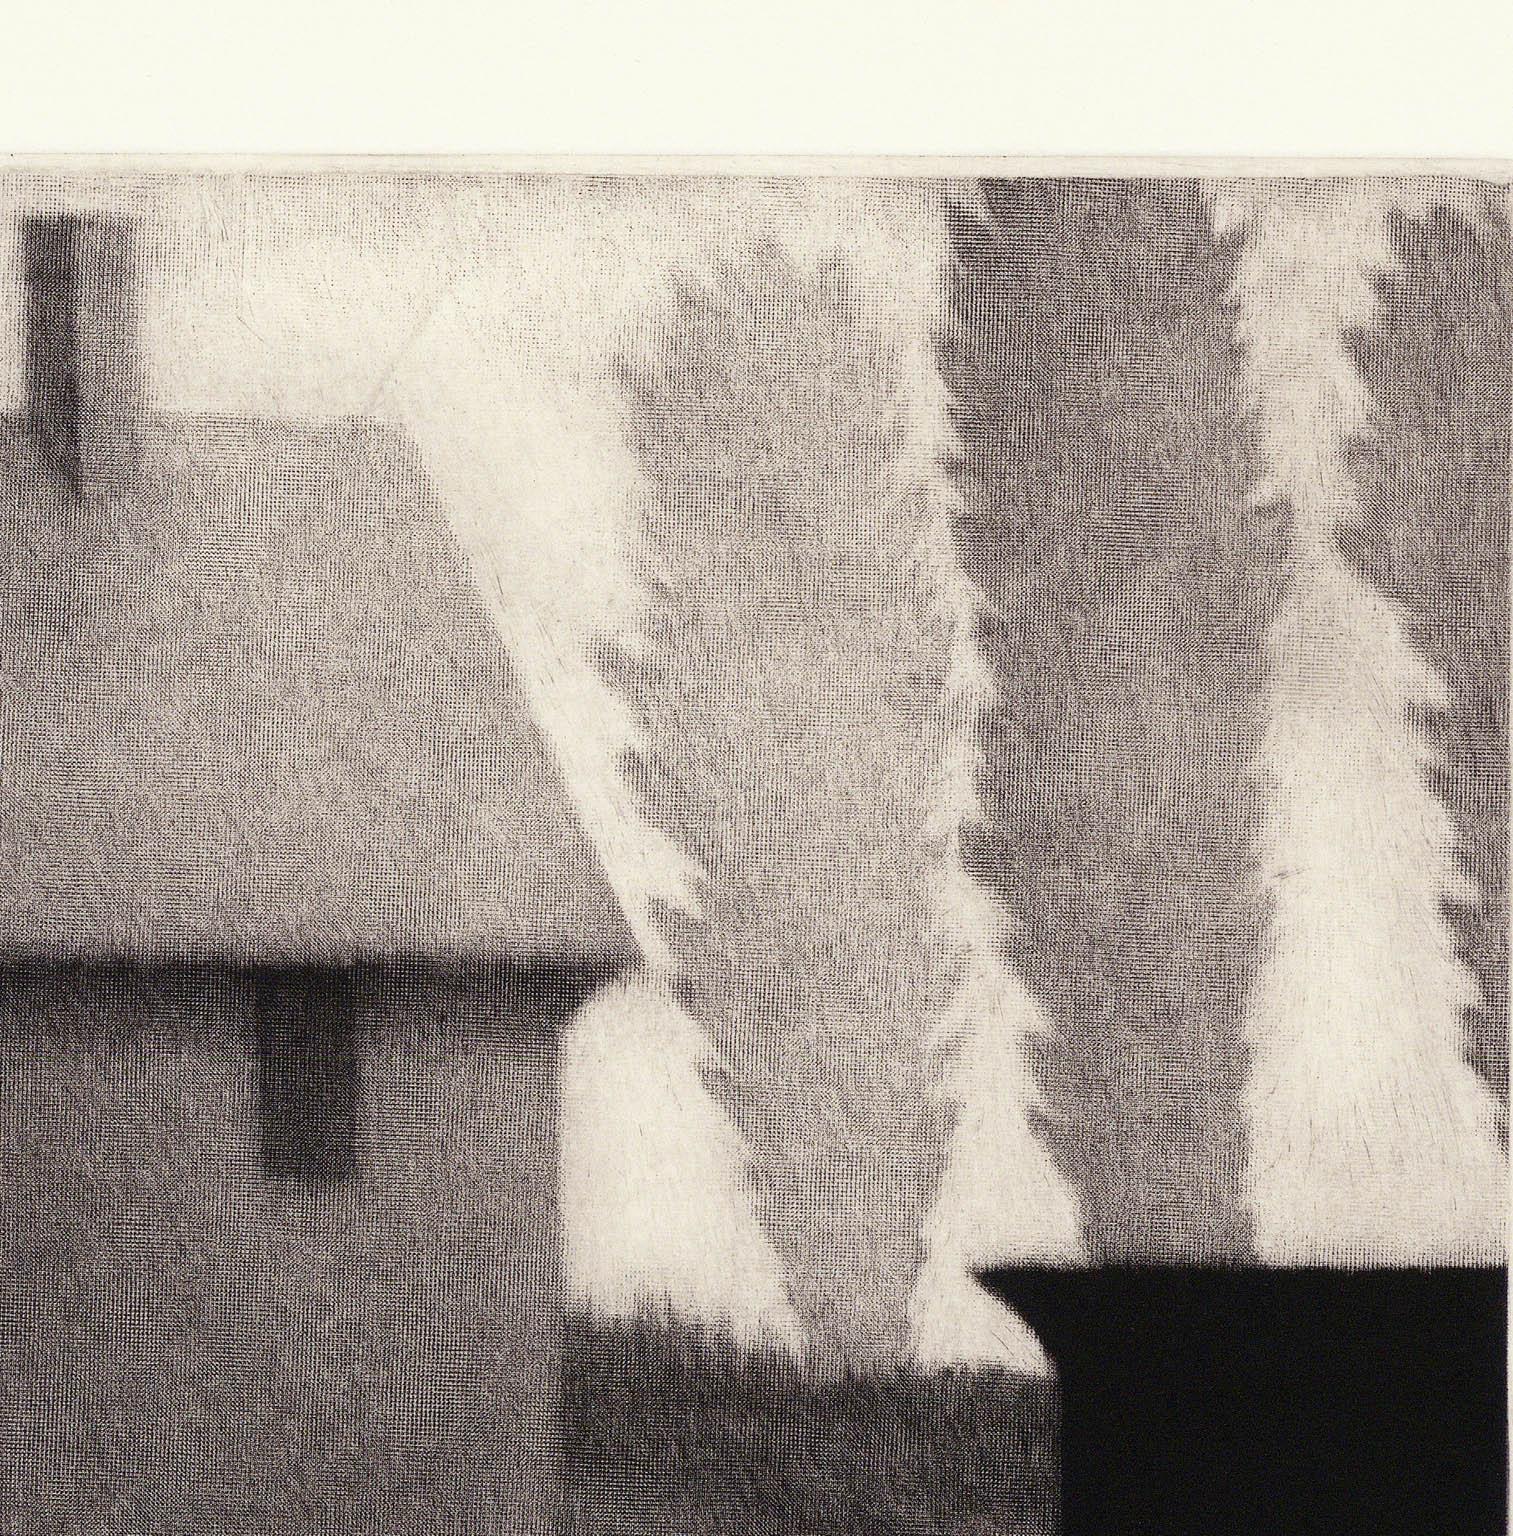 Chair & rooftoop - Modern Print by Robert Kipniss